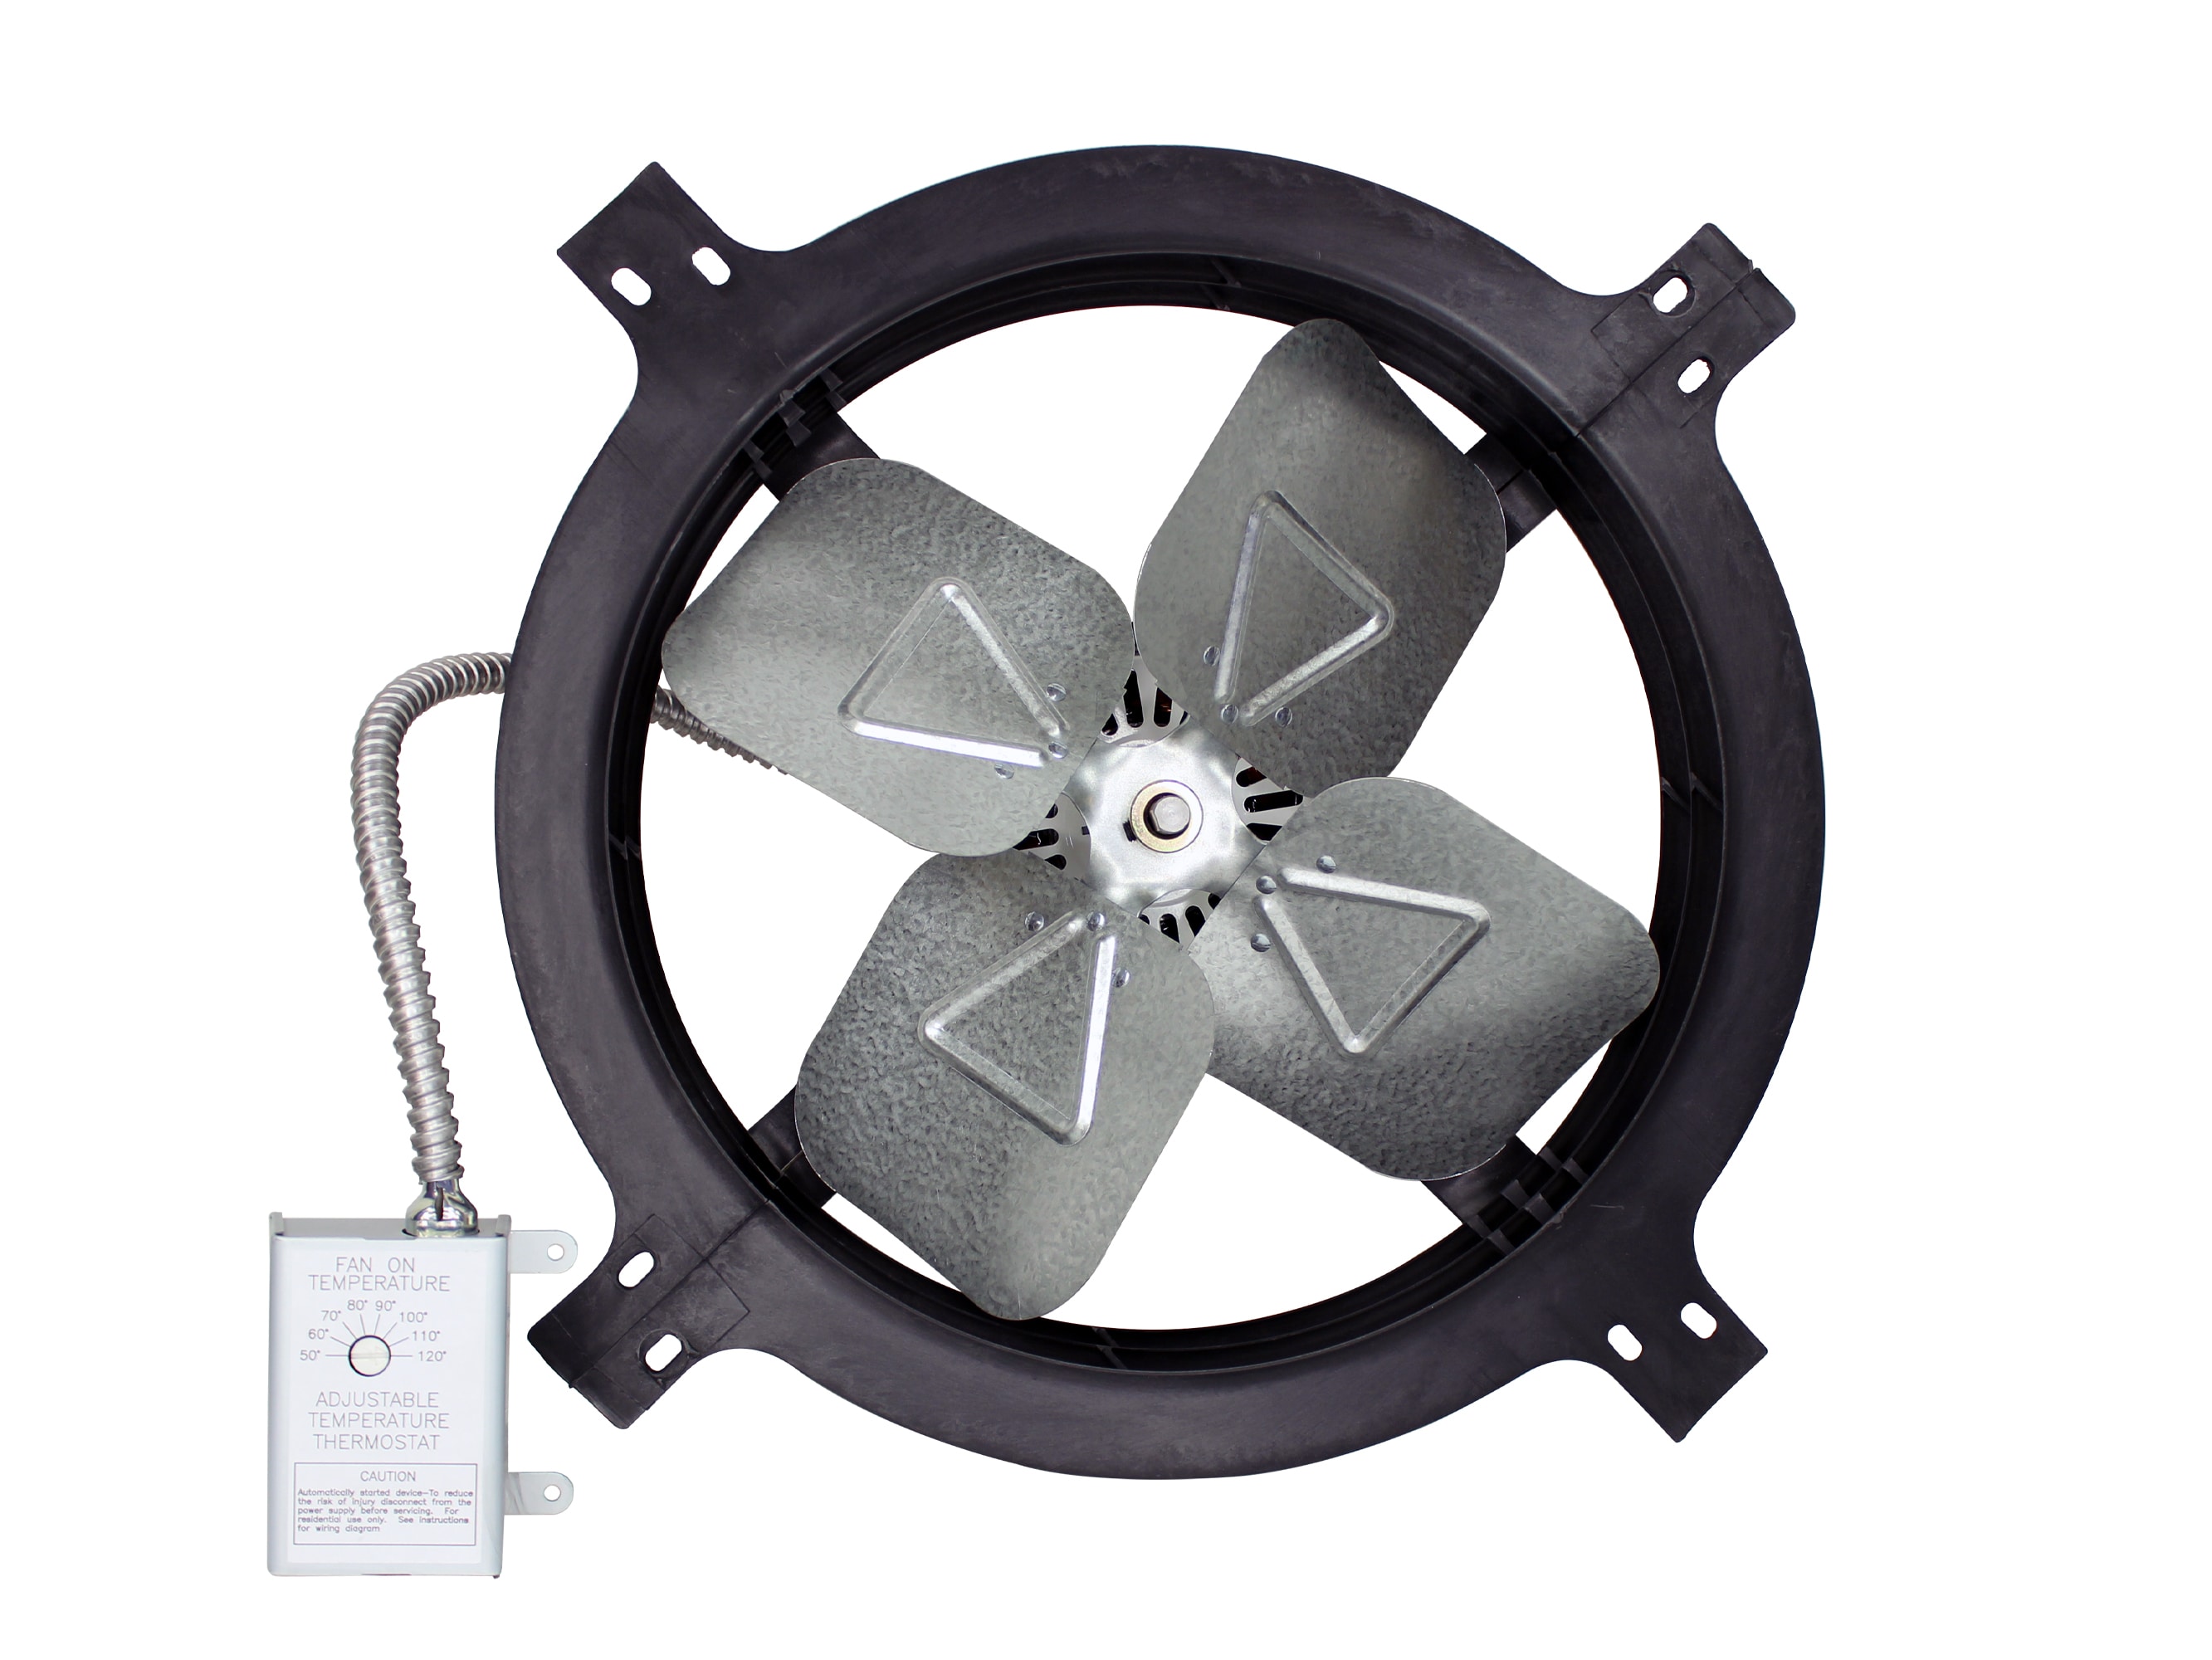 12 Inch Exhaust Fan Installation-free Portable Rental Exhaust Fan